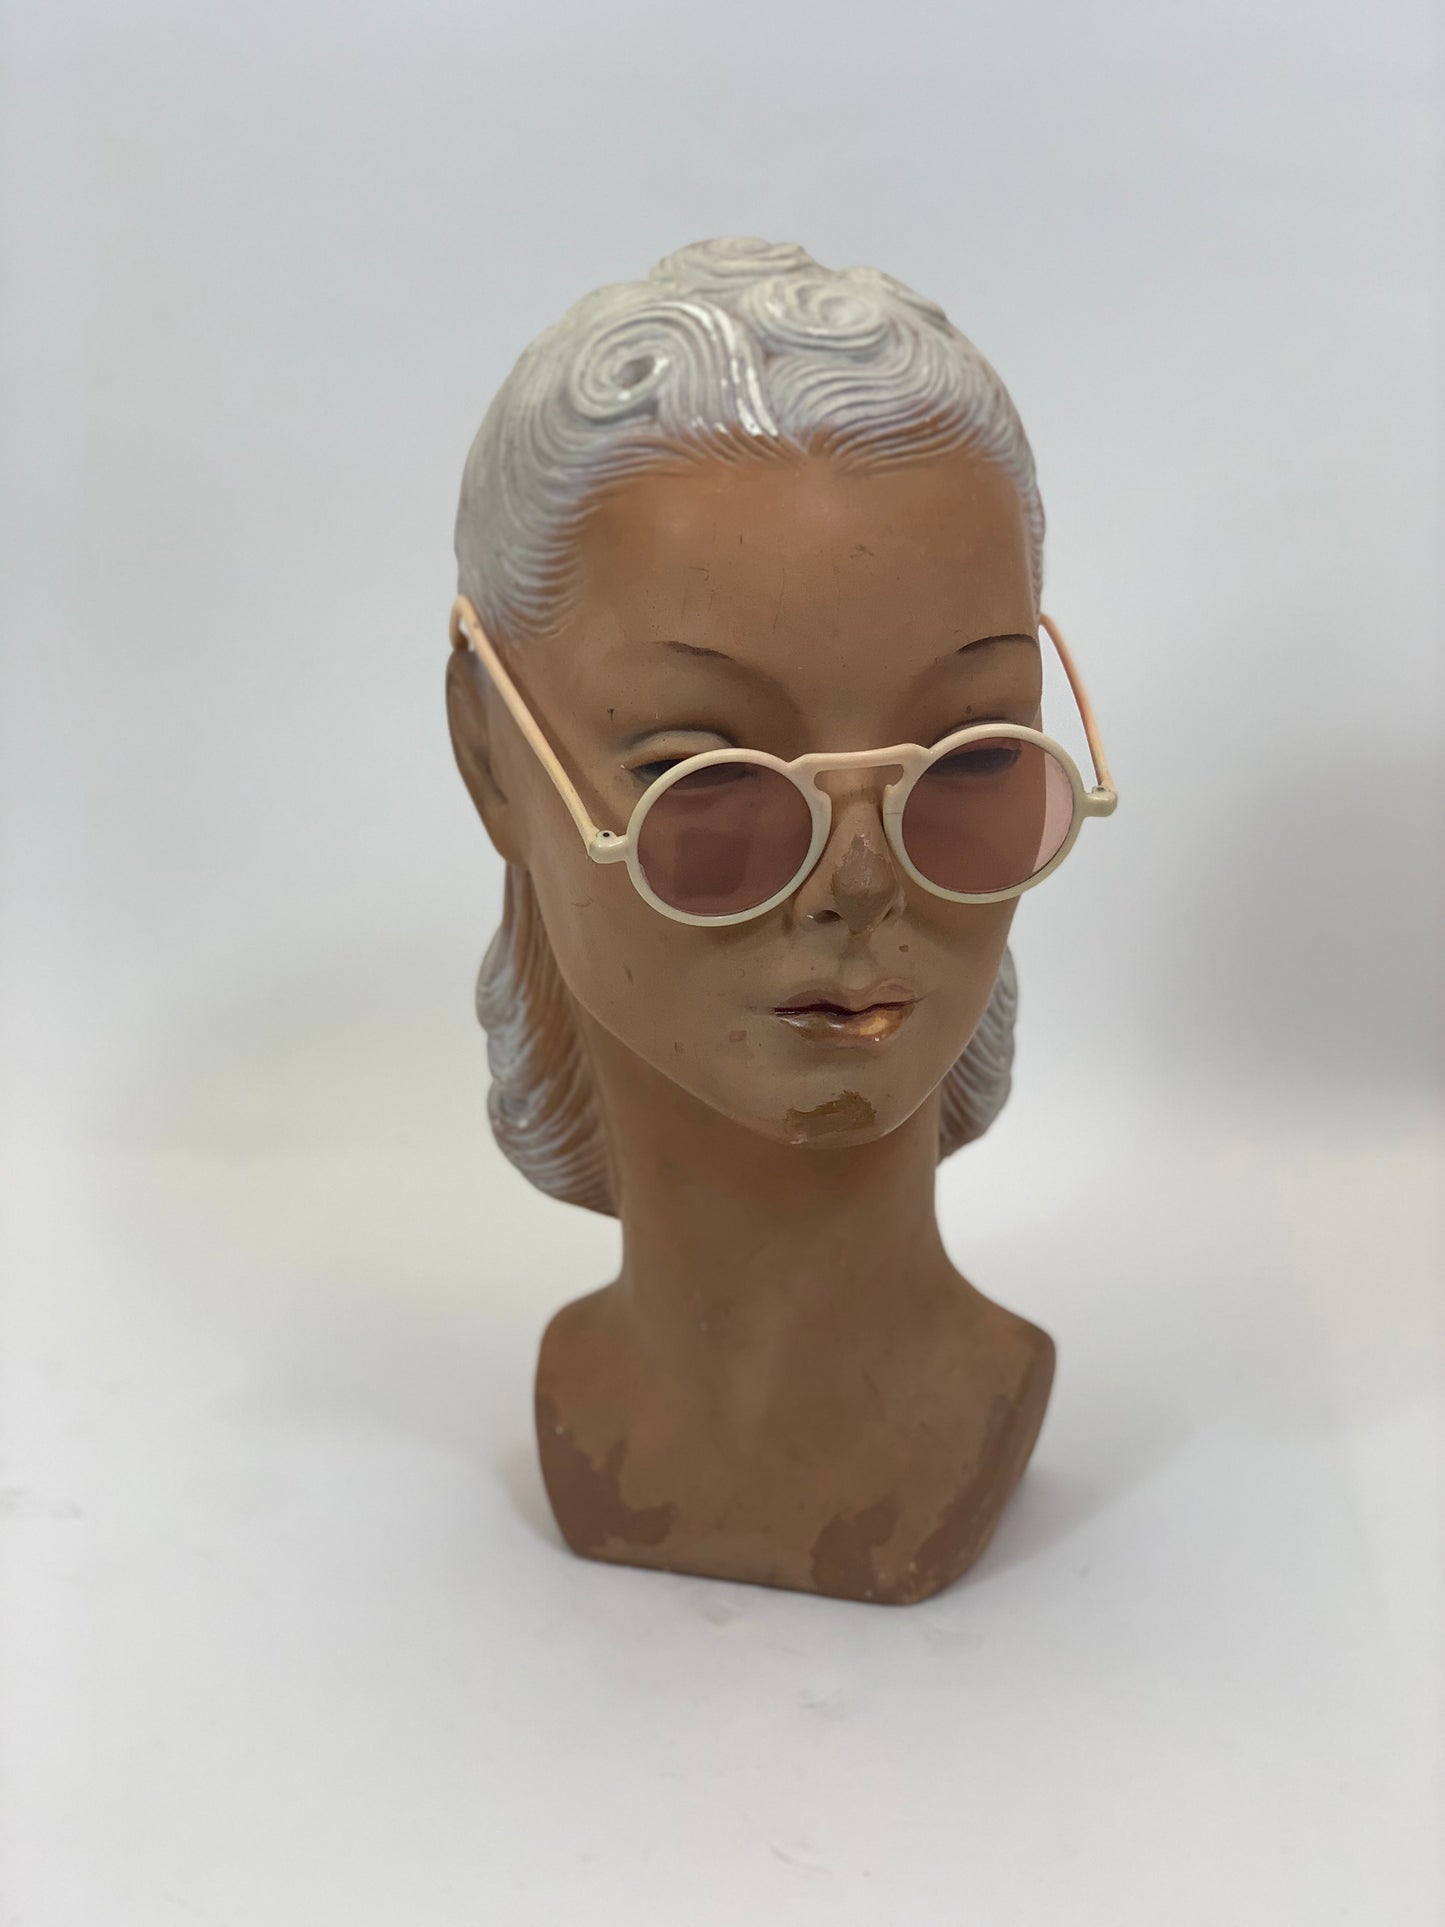 Original 1940’s tinted sunglasses - cream